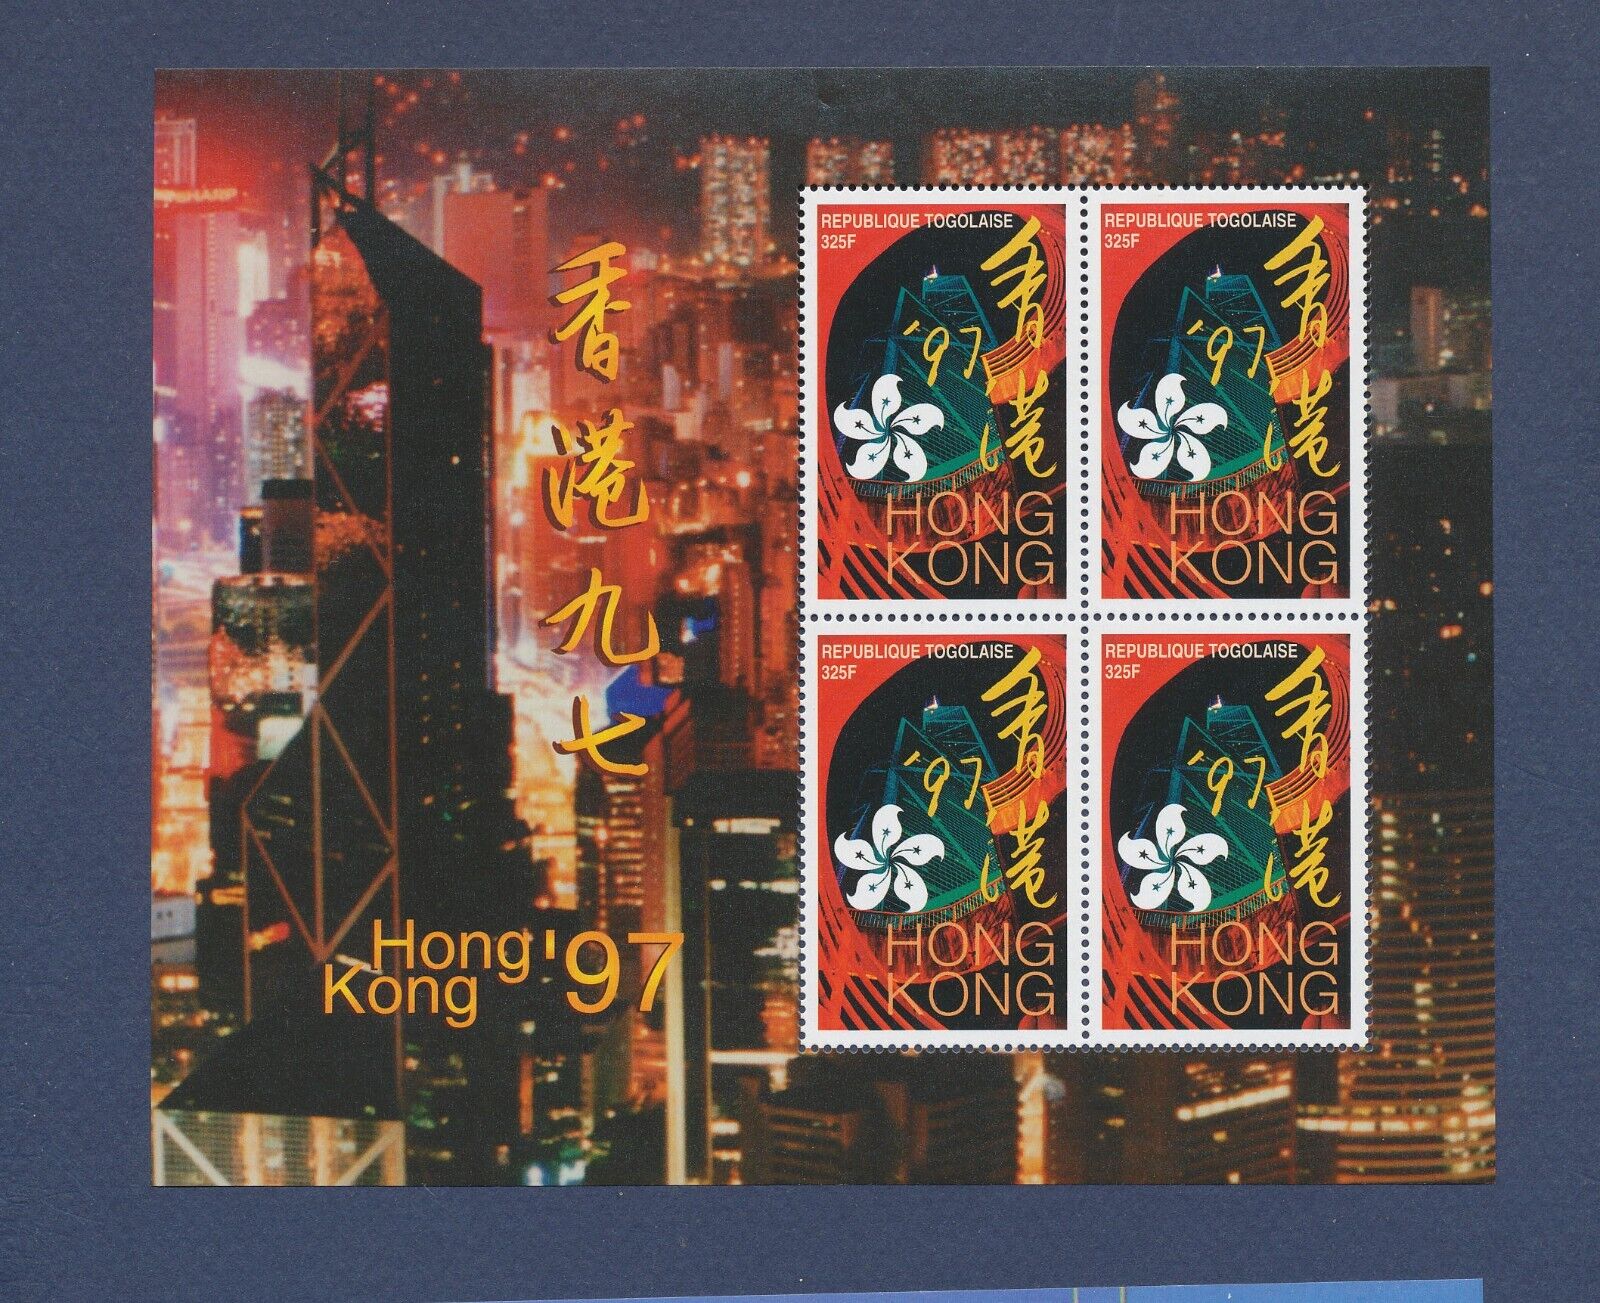 TOGO - Scott 1773a - MNH S/S - Hong Kong'97 Stamp Show, flower  - 1997